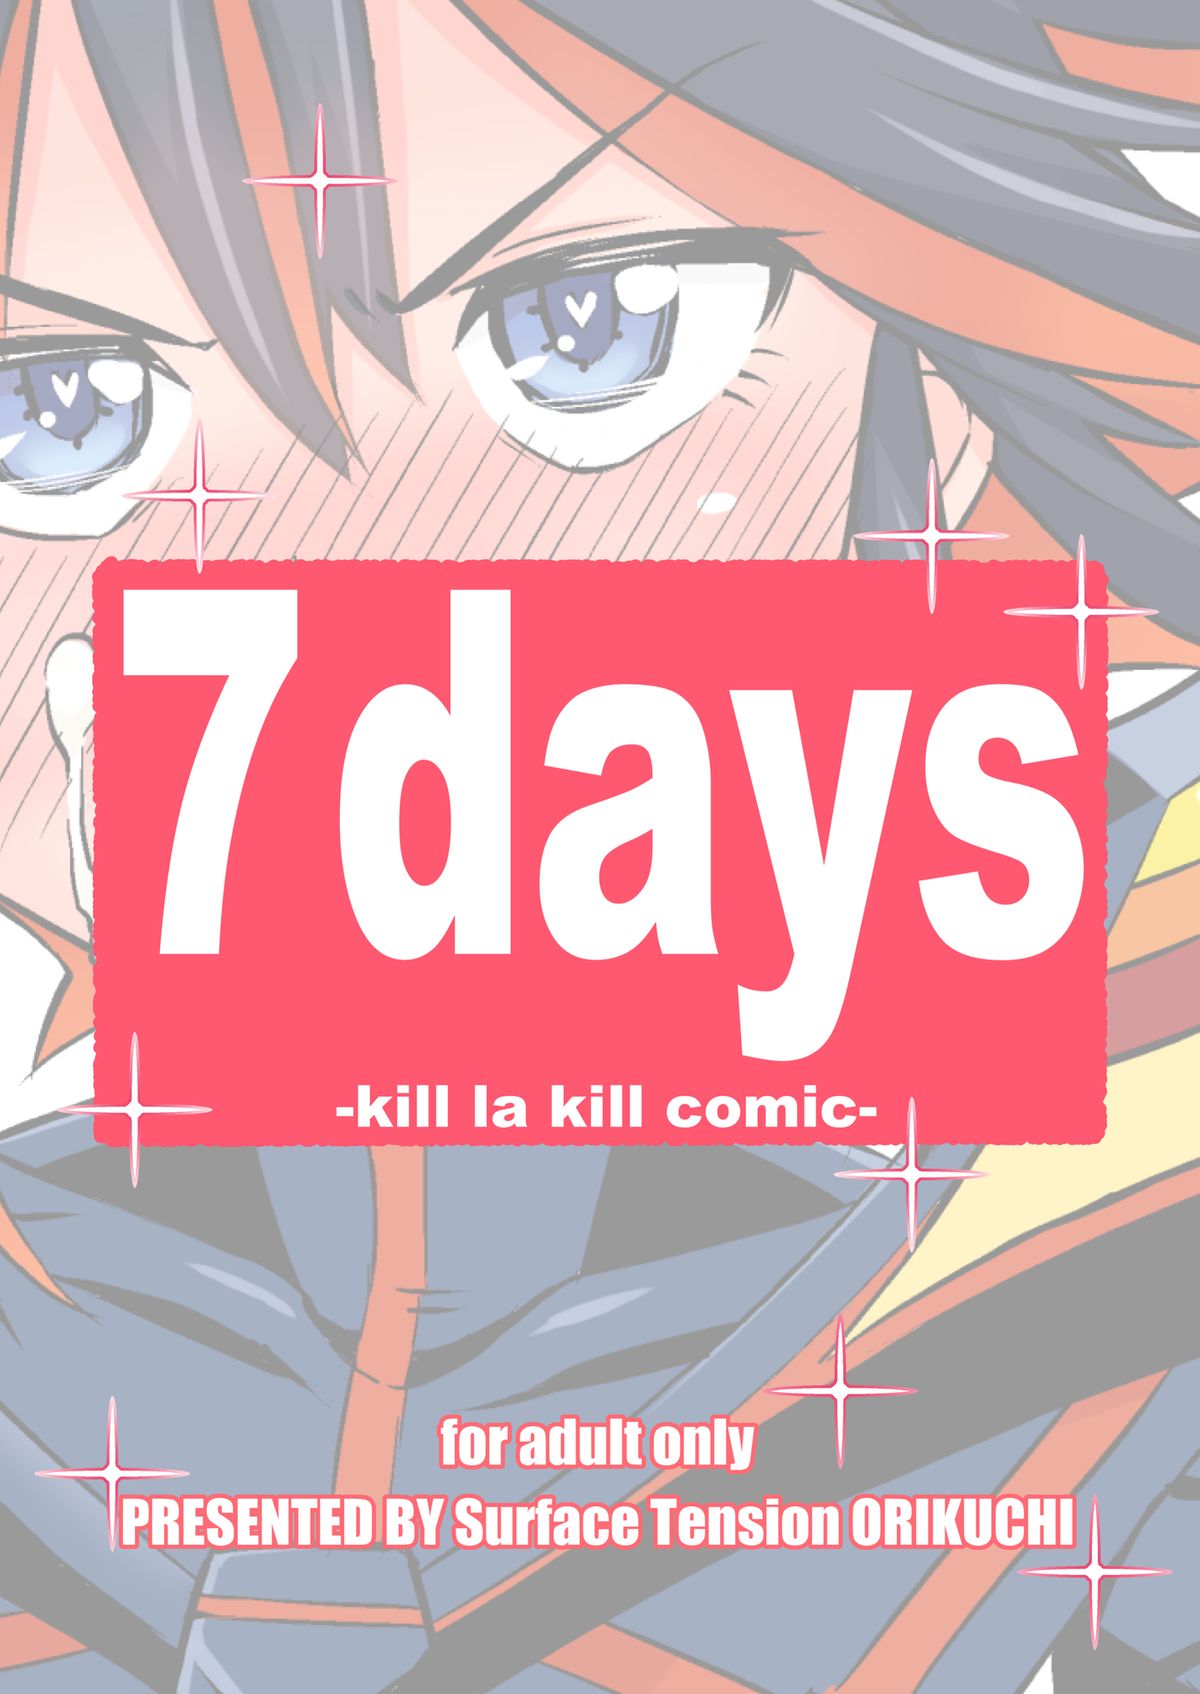 [Surface Tension (Orikuchi)] Seven Days (Kill La Kill) [Digital] page 18 full